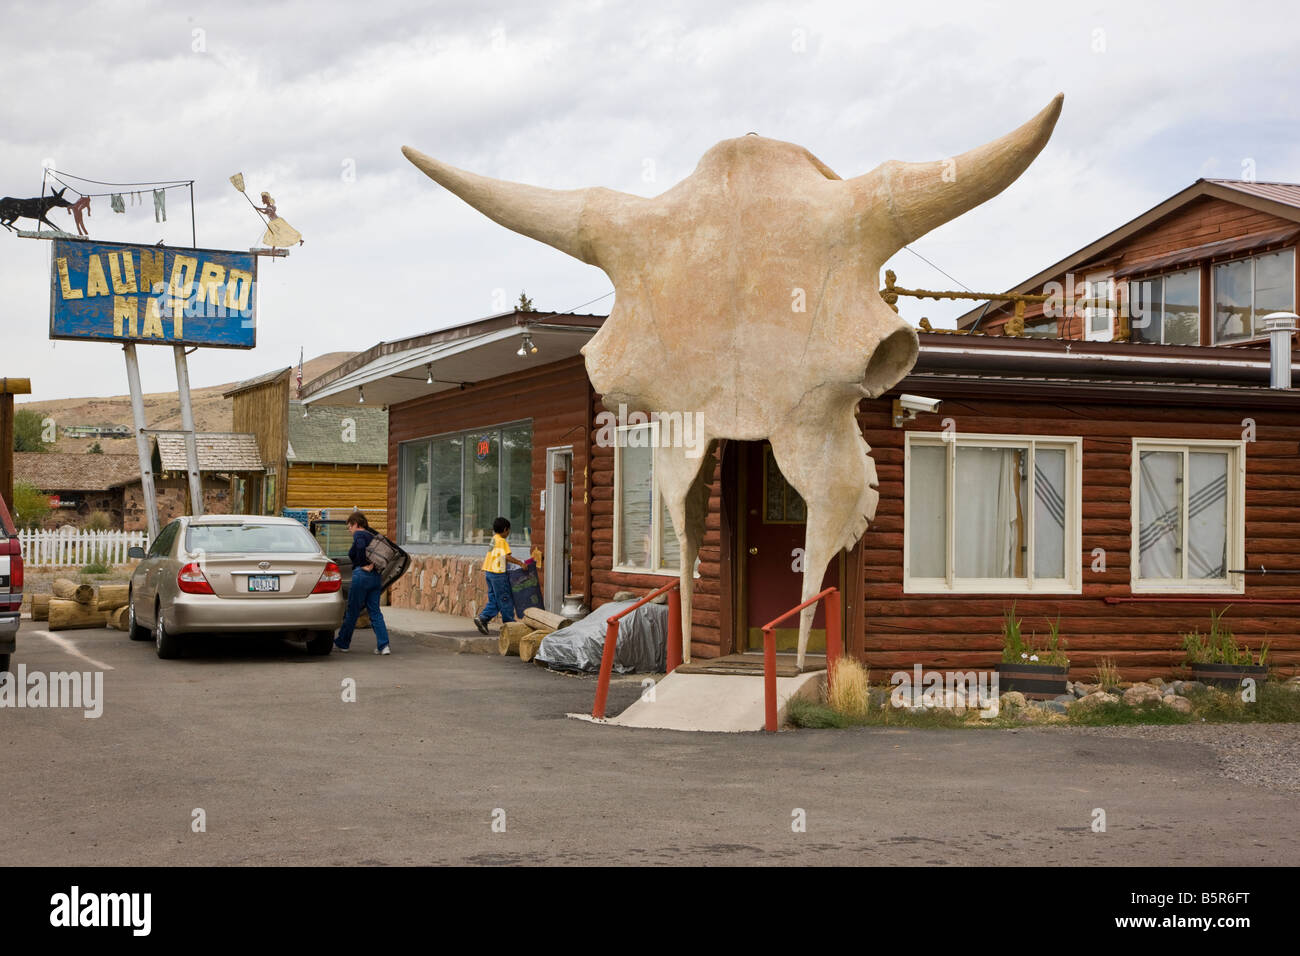 Ingresso umoristico di una lavanderia a gettoni in Dubois, Wyoming negli Stati Uniti. Un sovradimensionamento del cranio di vacca incornicia la porta. Foto Stock